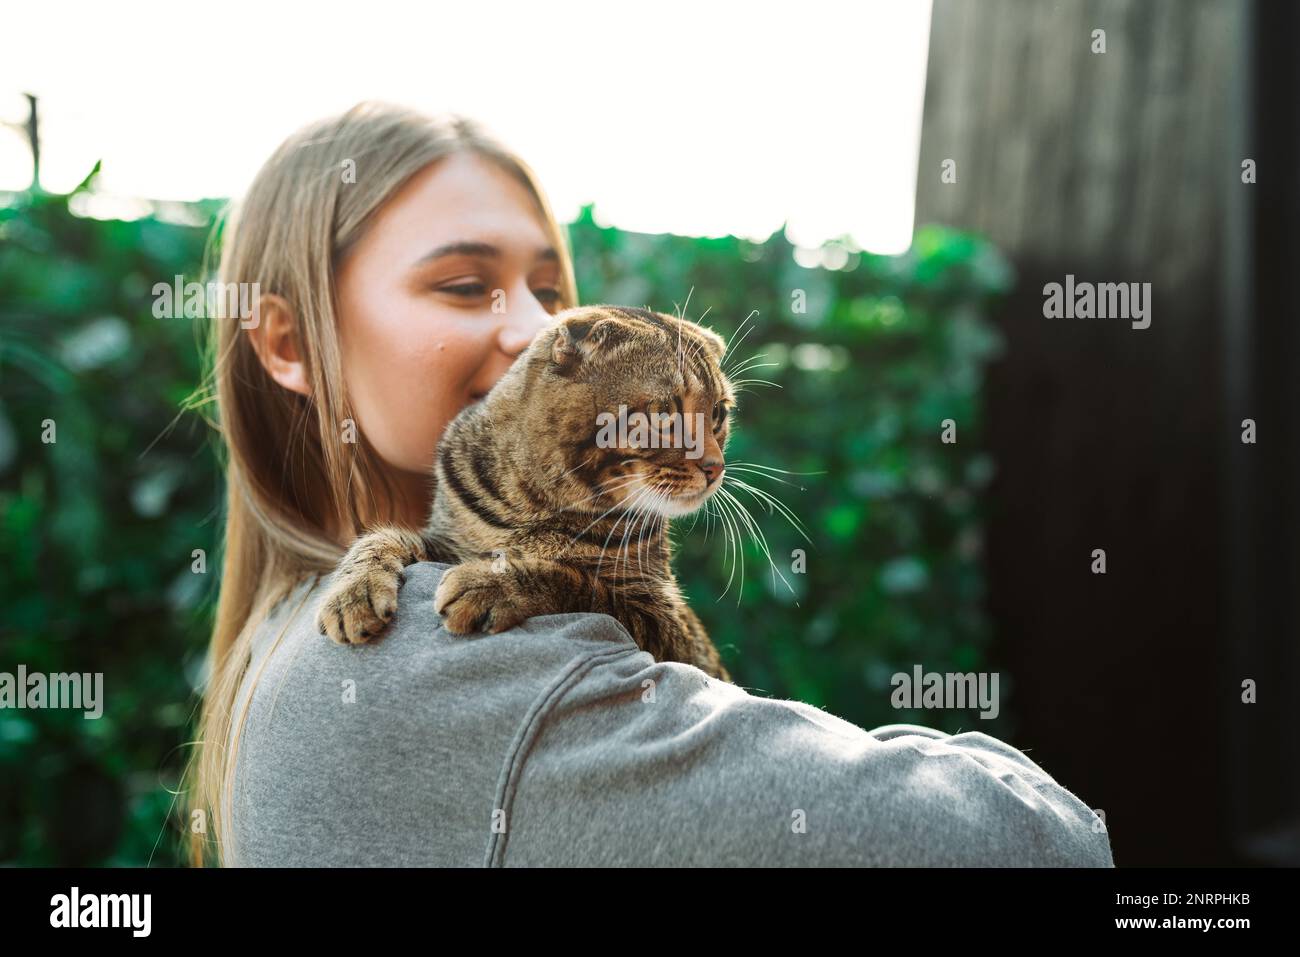 Jolie jeune femme blonde souriante tient un chat écossais aux yeux verts dans ses bras et l'épouse à l'extérieur, concept d'aimer et de s'occuper des animaux de compagnie Banque D'Images